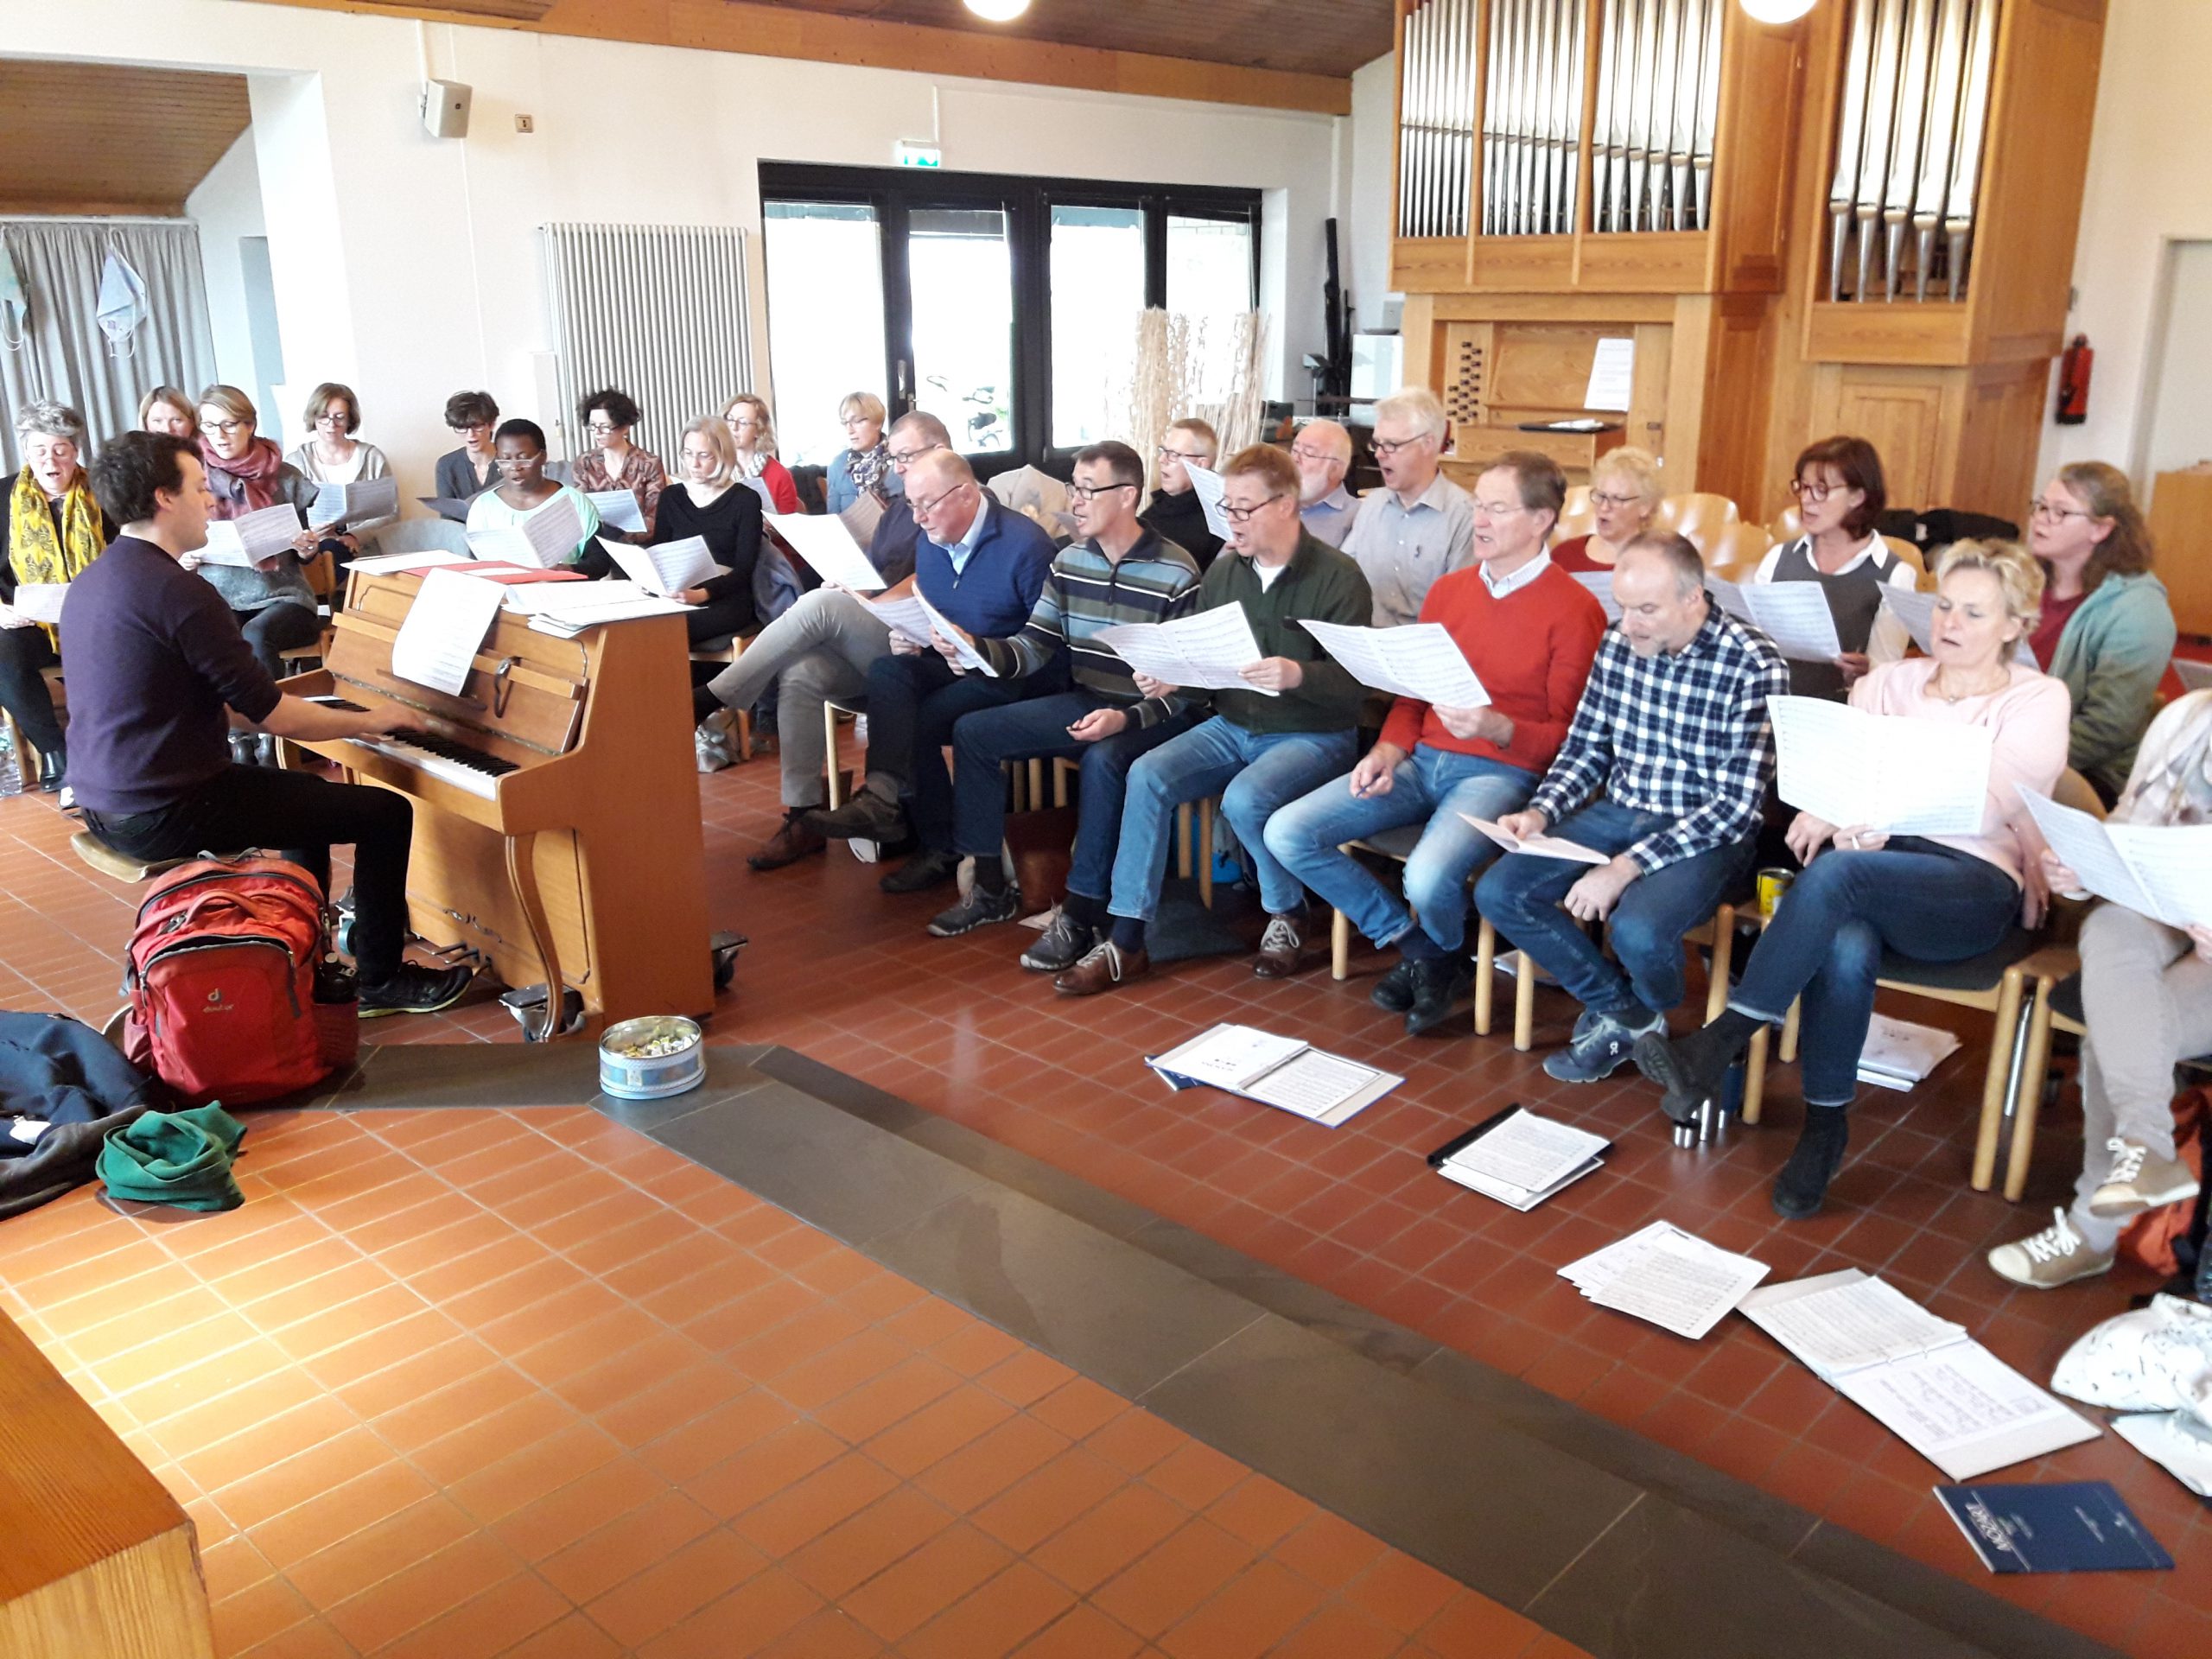 Chor tonart  e. V. - Mitglied im Verband deutscher Konzertchöre VDKC